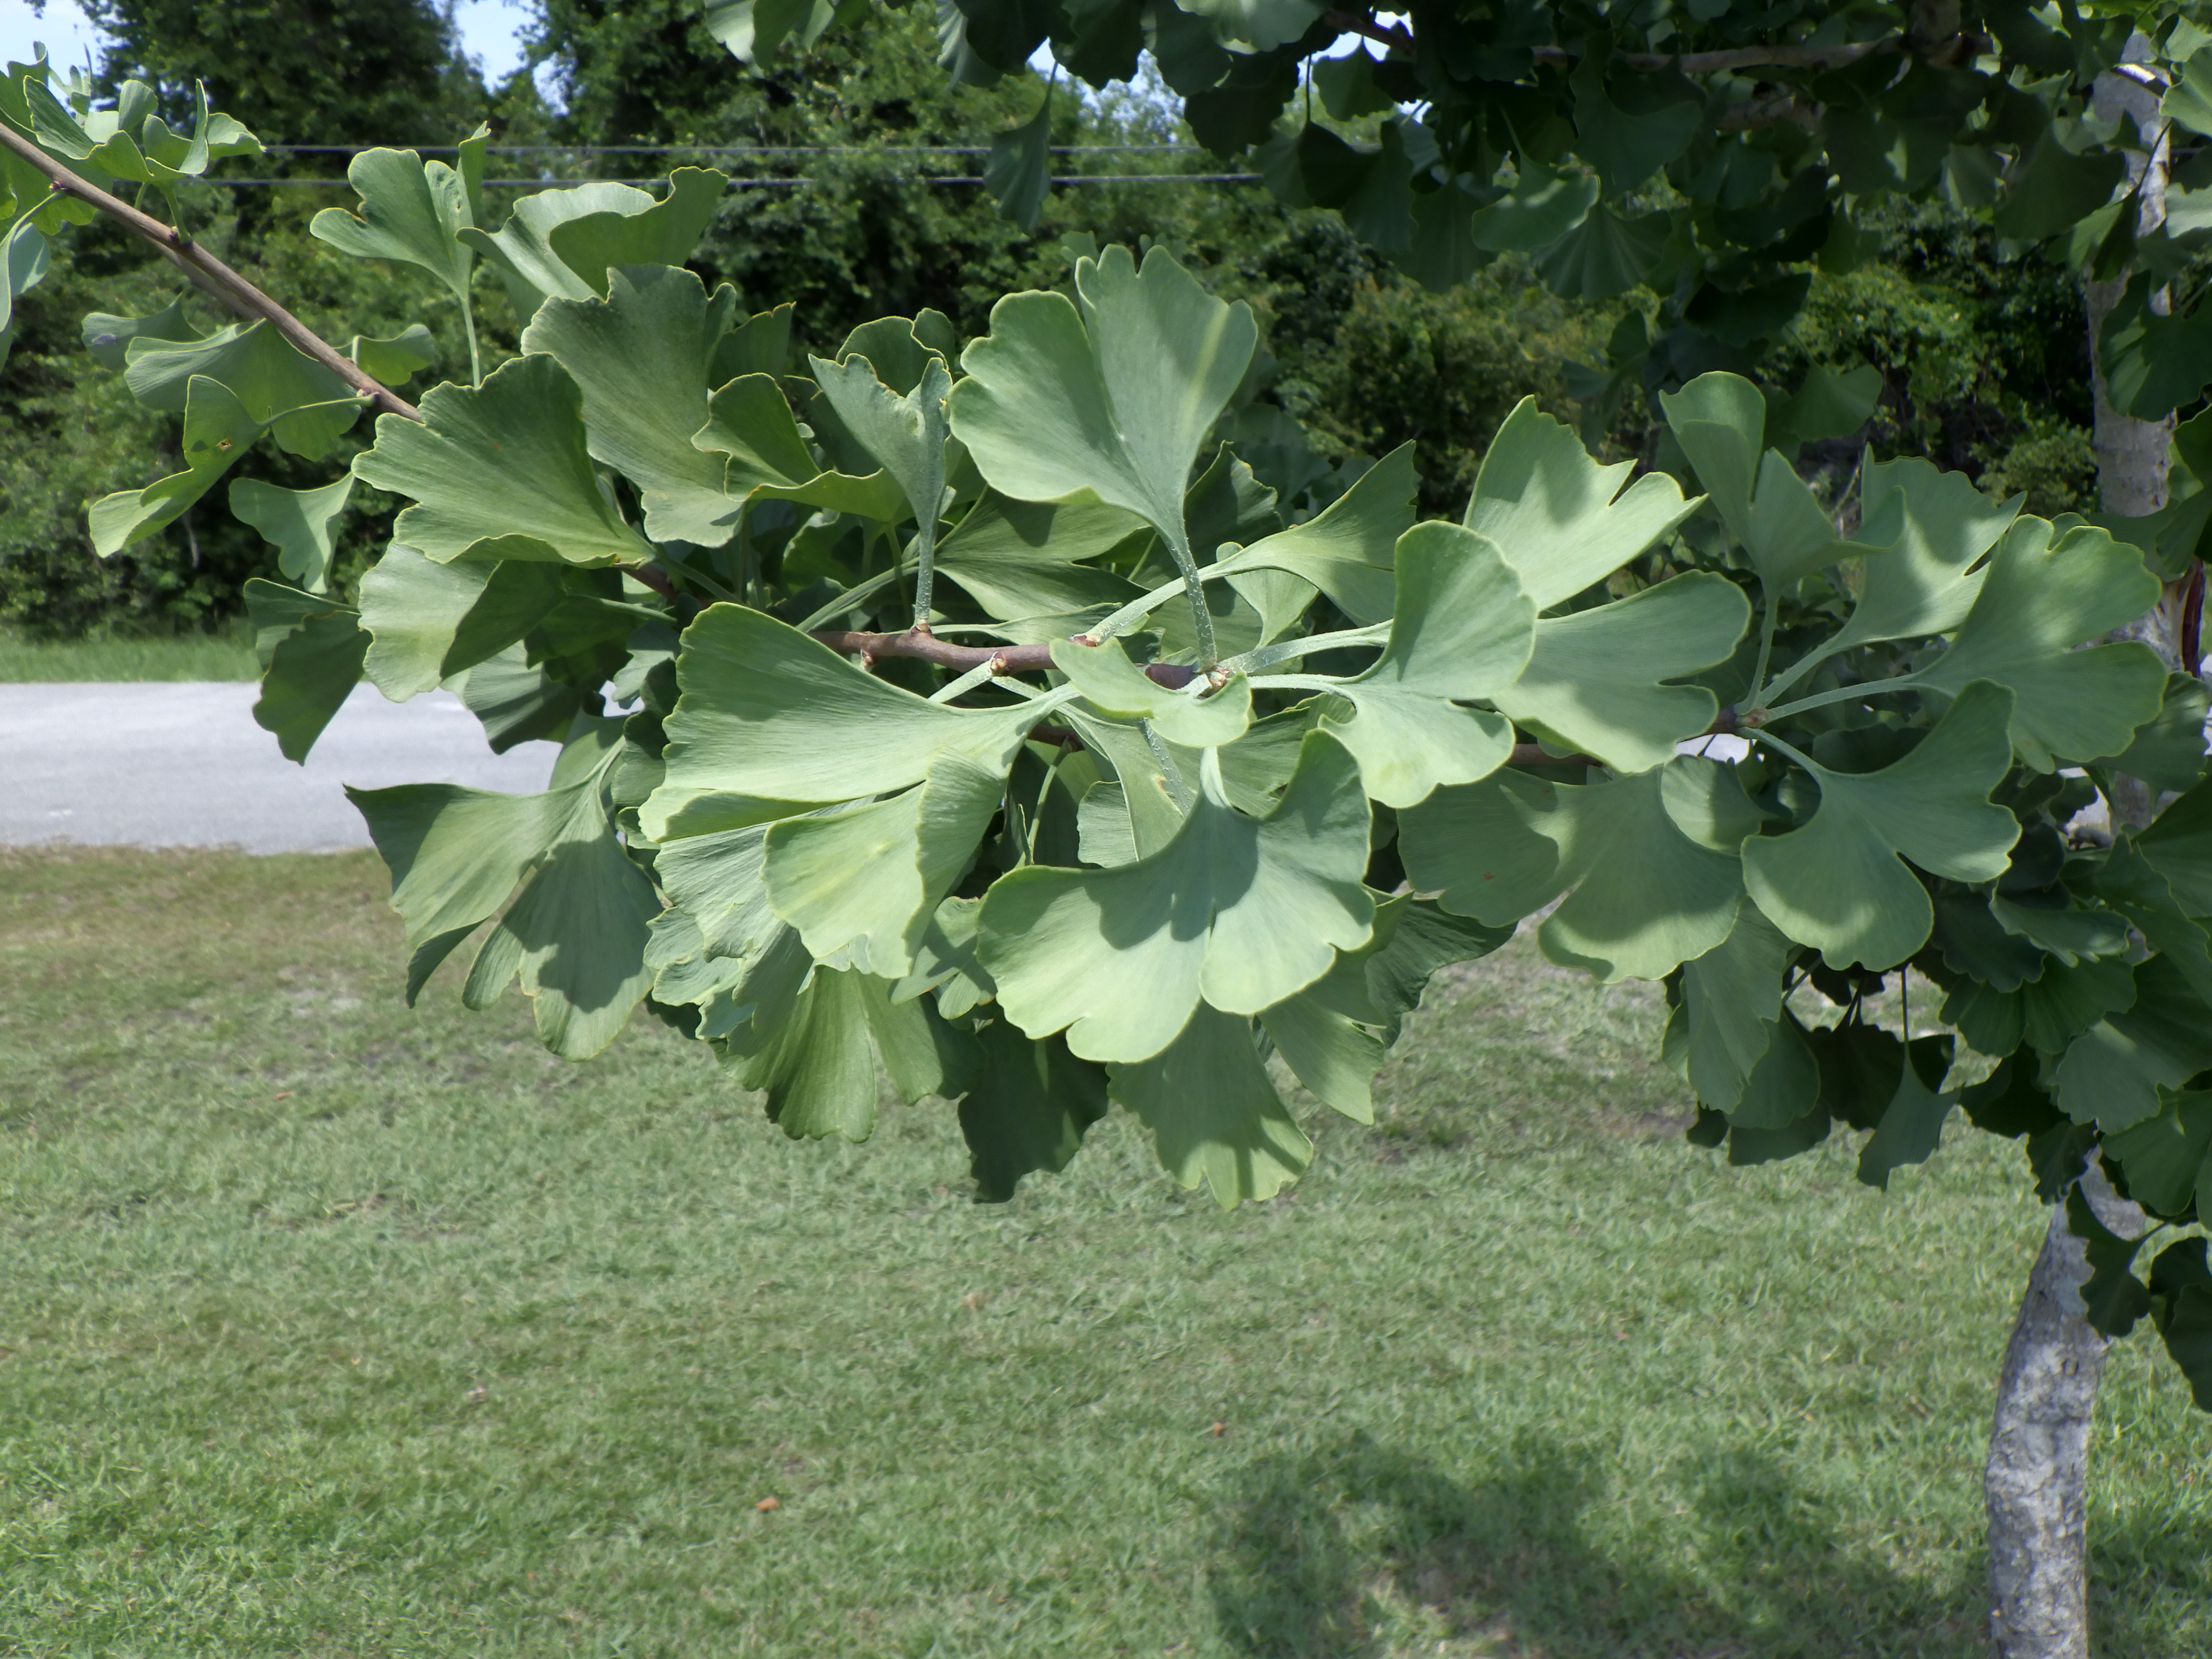 Fan shaped green leaves